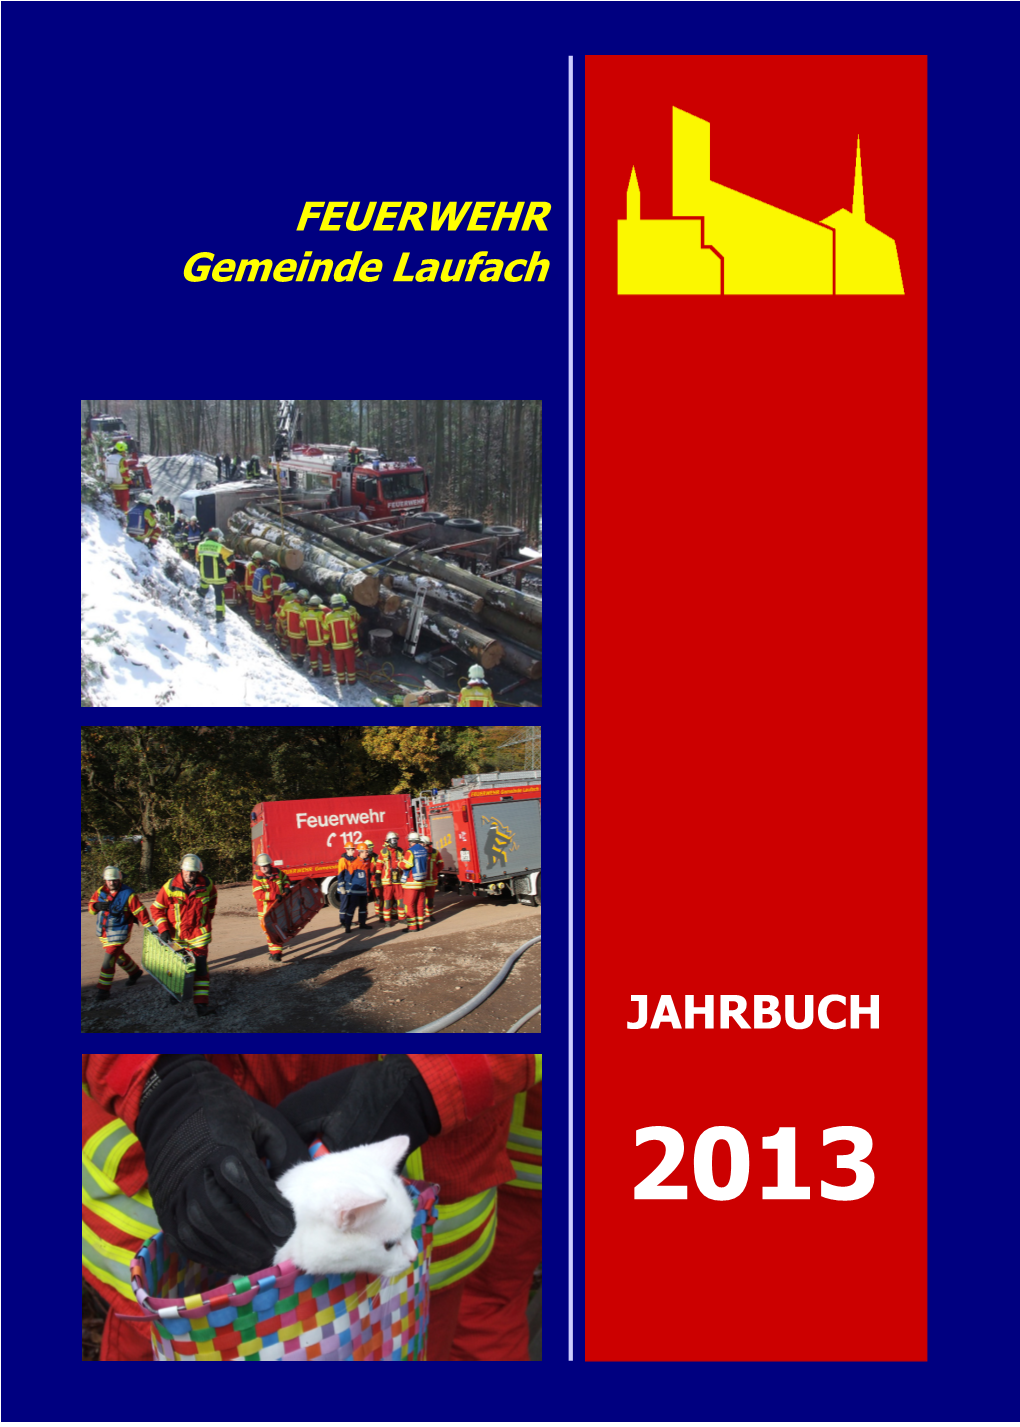 JAHRBUCH 2013 FEUERWEHR Gemeinde Laufach